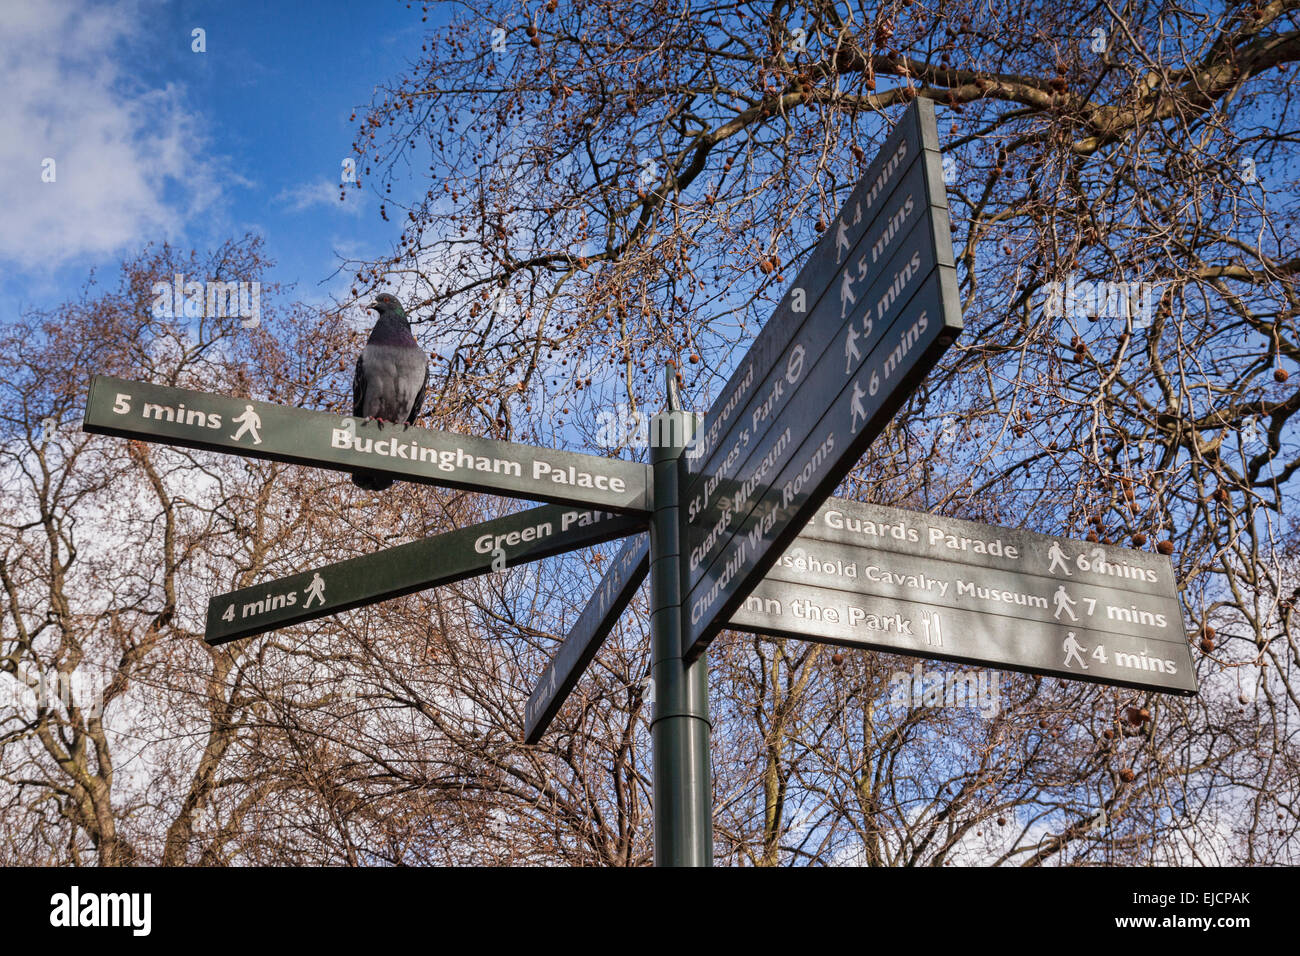 Pigeon perché sur panneau pour Buckingham Palace, Londres, l'hiver. Banque D'Images